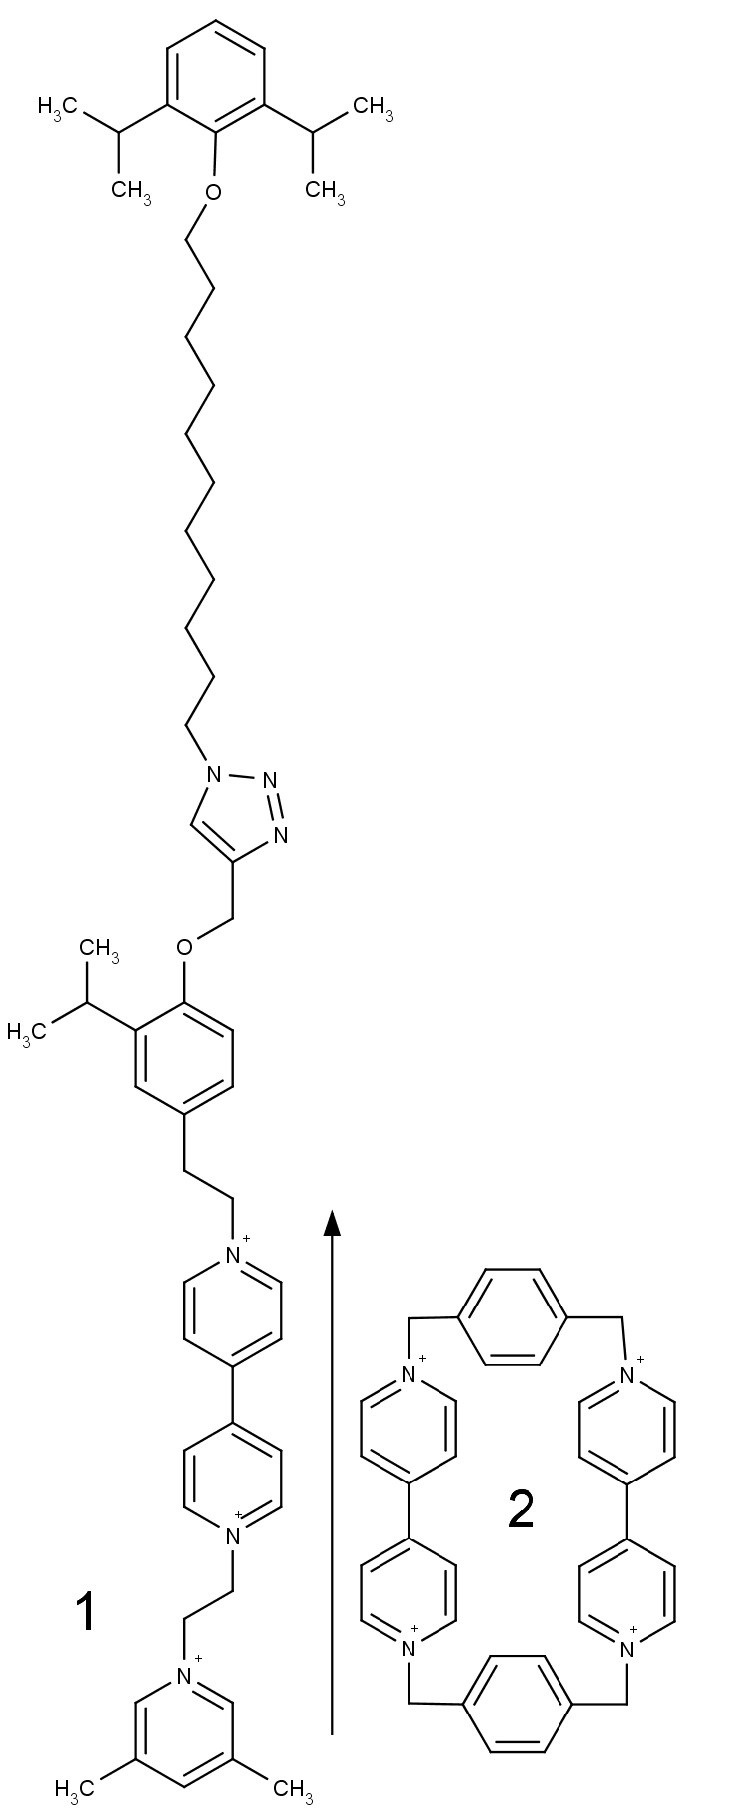 struktura v textu zmíněných molekul (1) a (2)